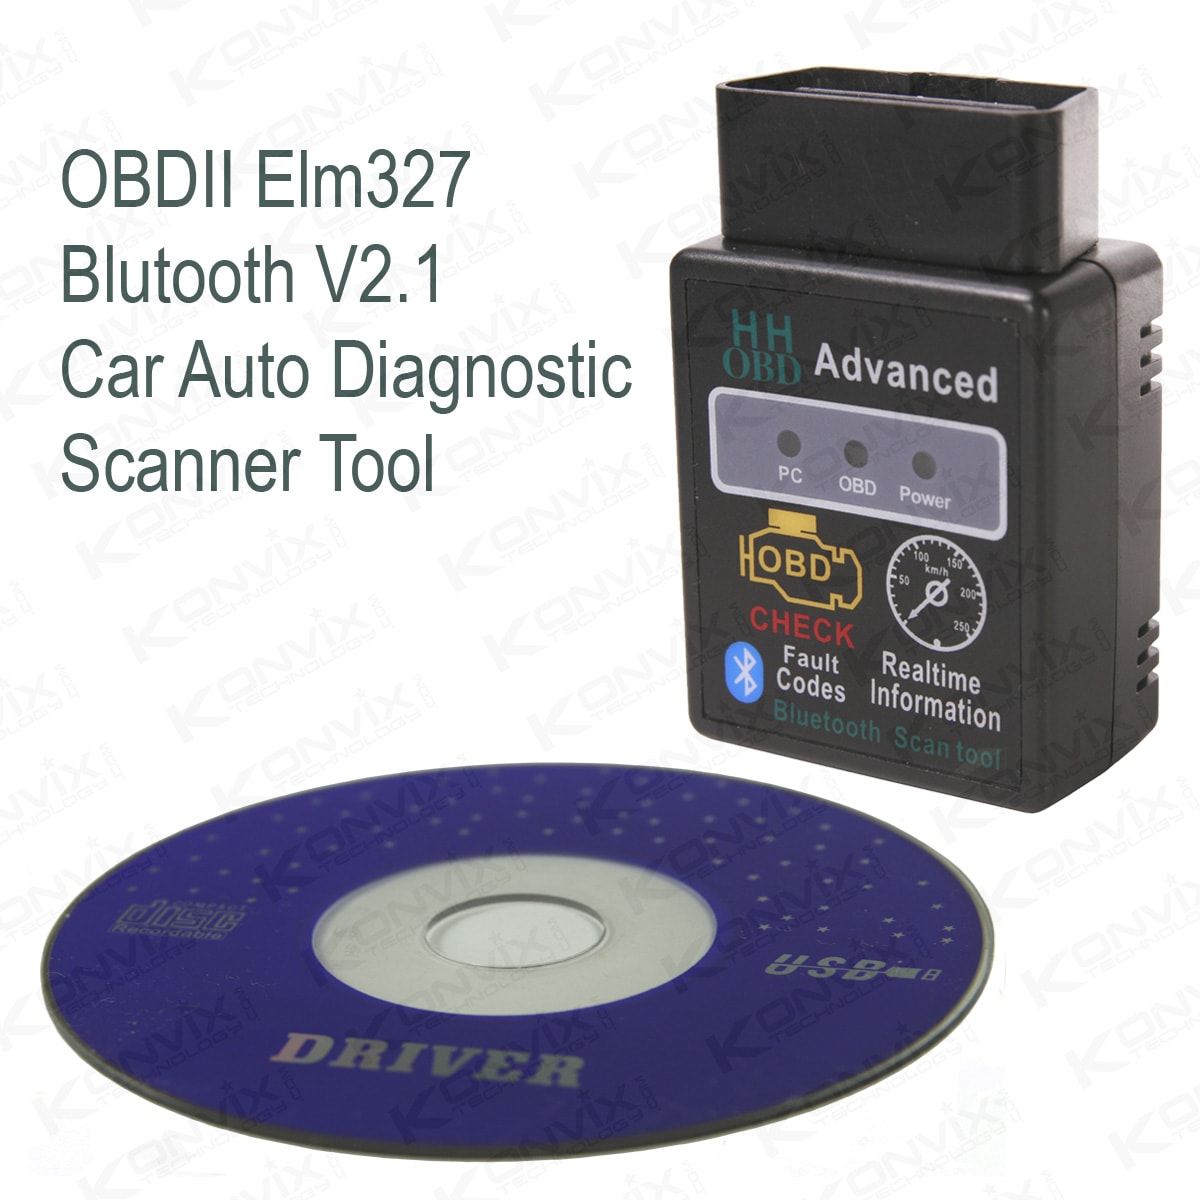 OBDII Elm327 
Bluetooth V2.1 
Car Auto Diagnostic Scanner Tool